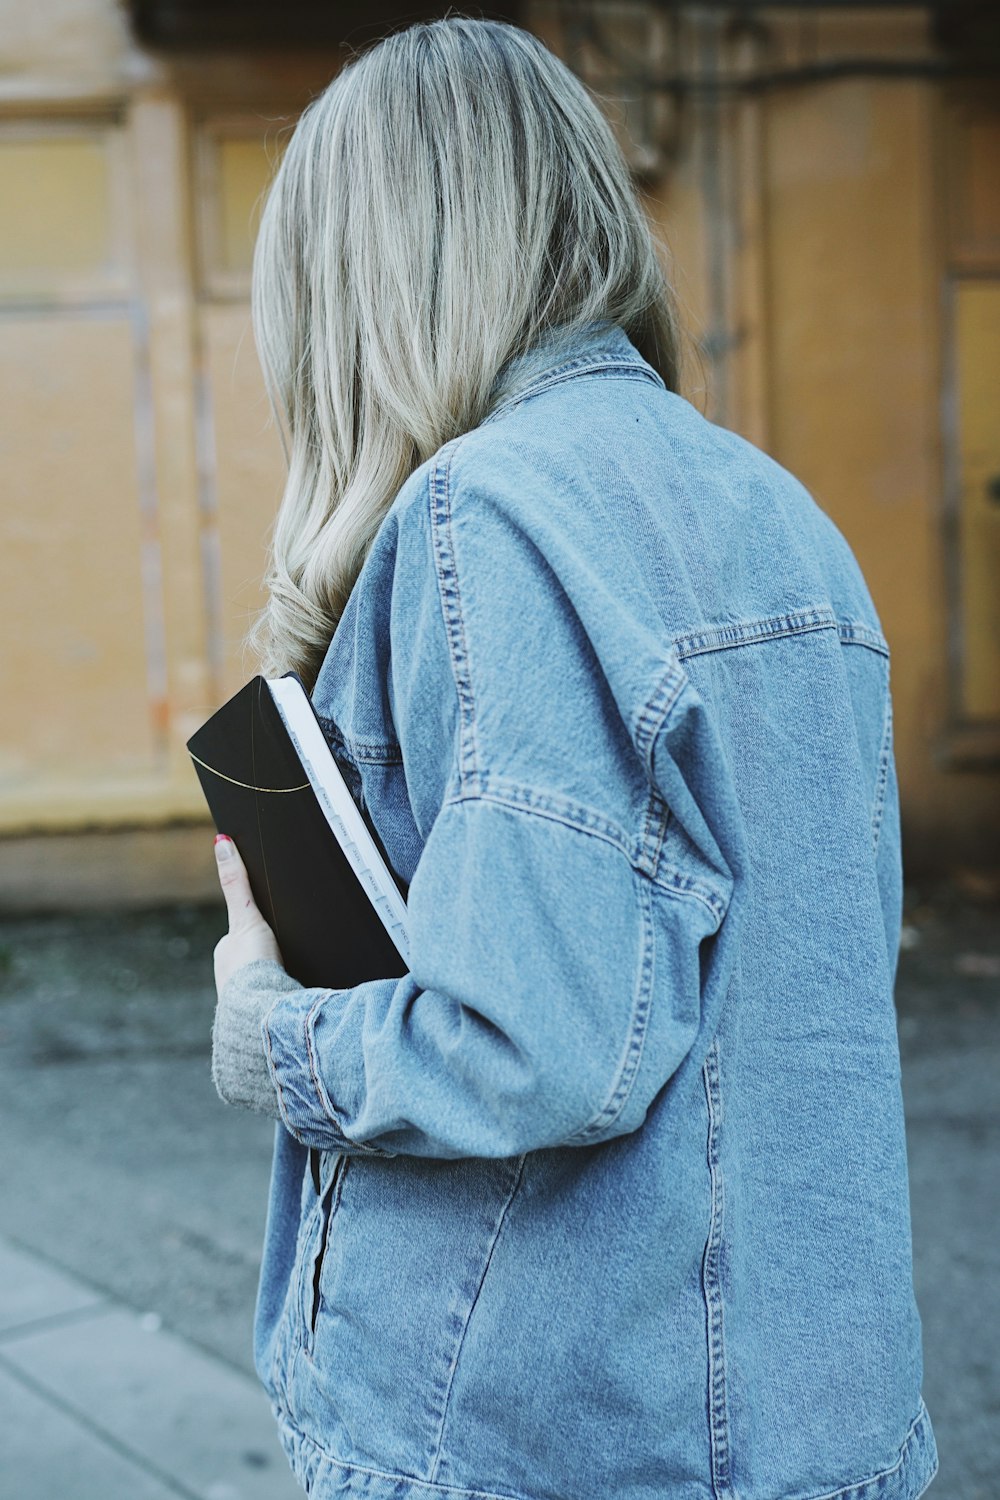 Femme portant une veste en jean bleue tenant un livre noir